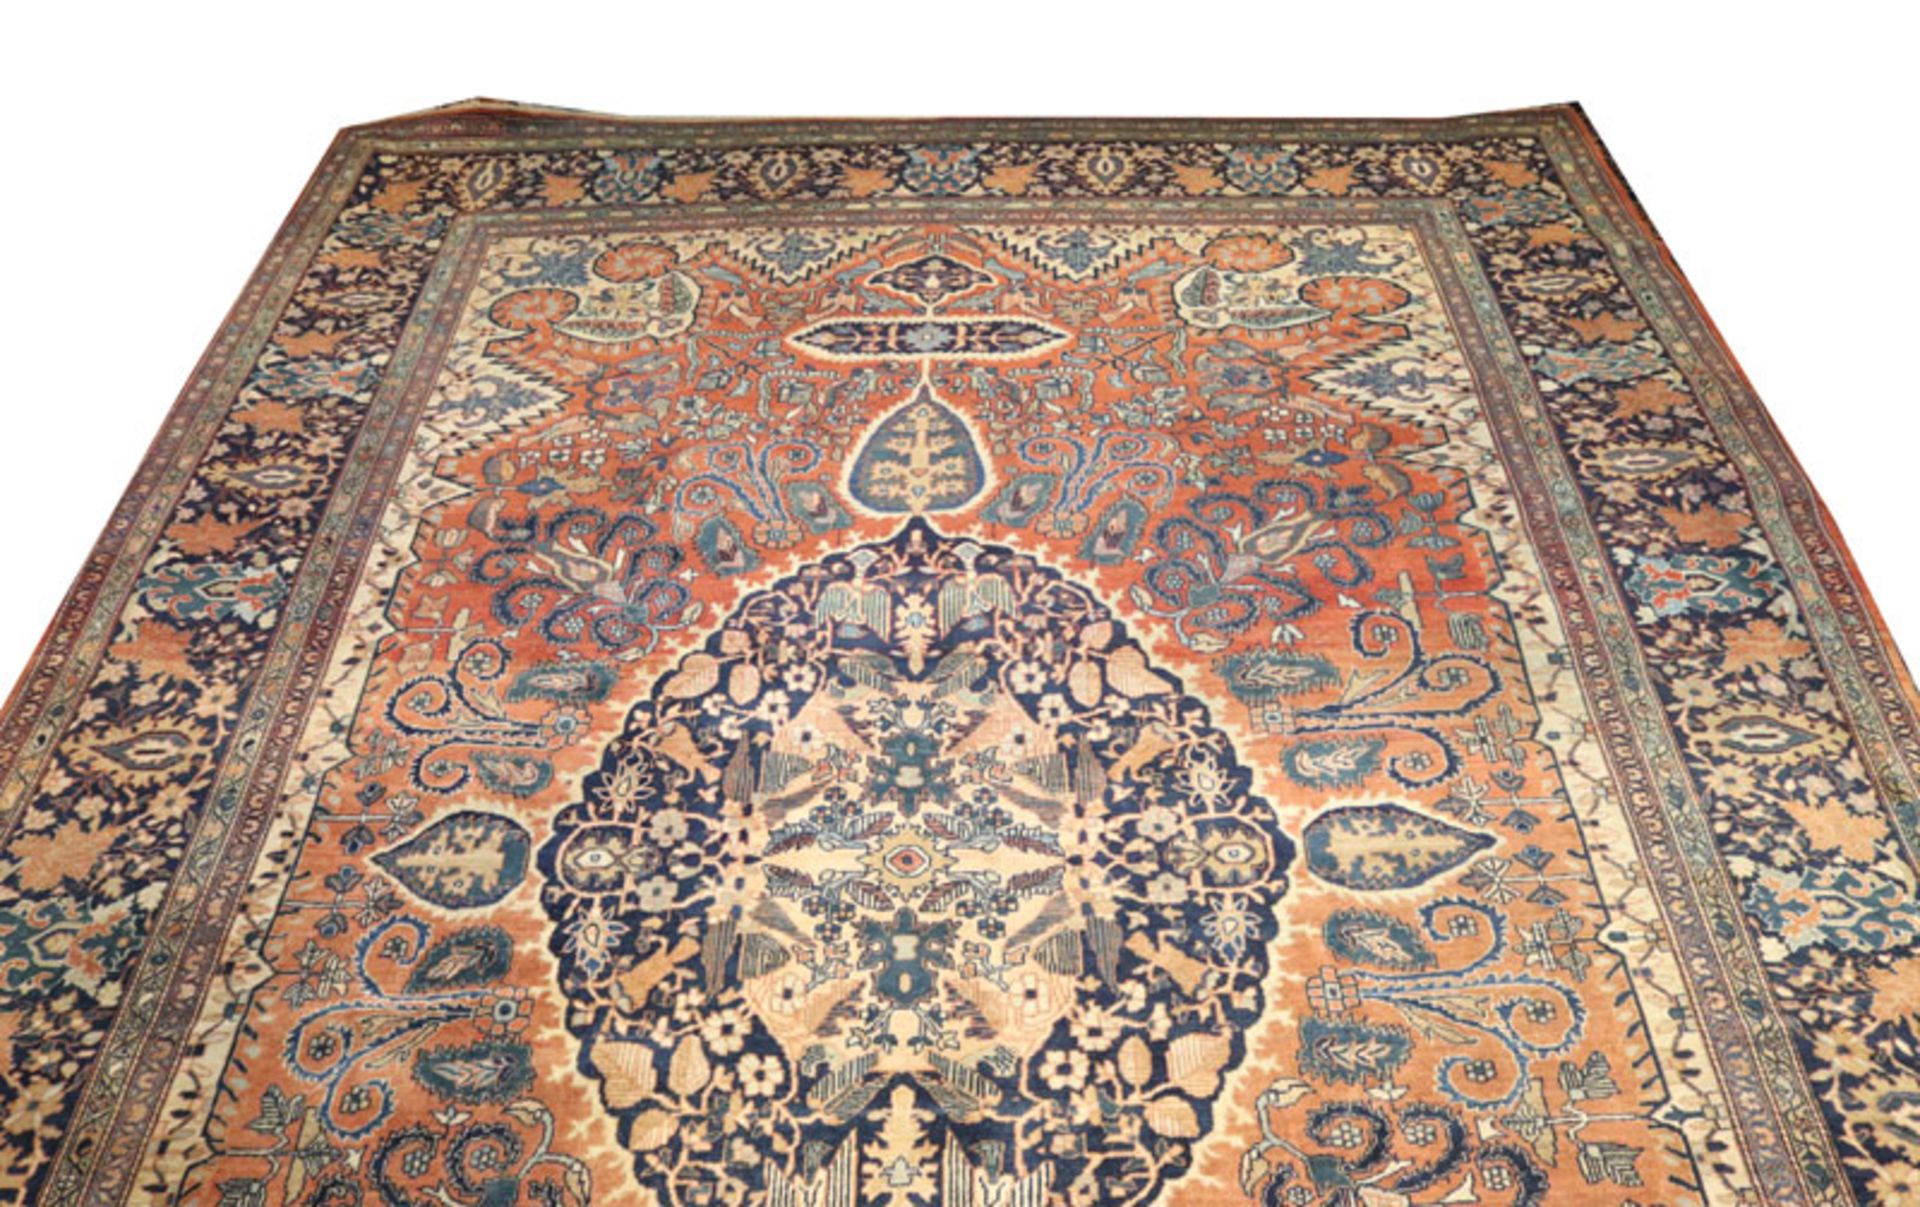 Teppich, Kirman, blau/braun, 376 cm x 254 cm, Gebrauchsspuren